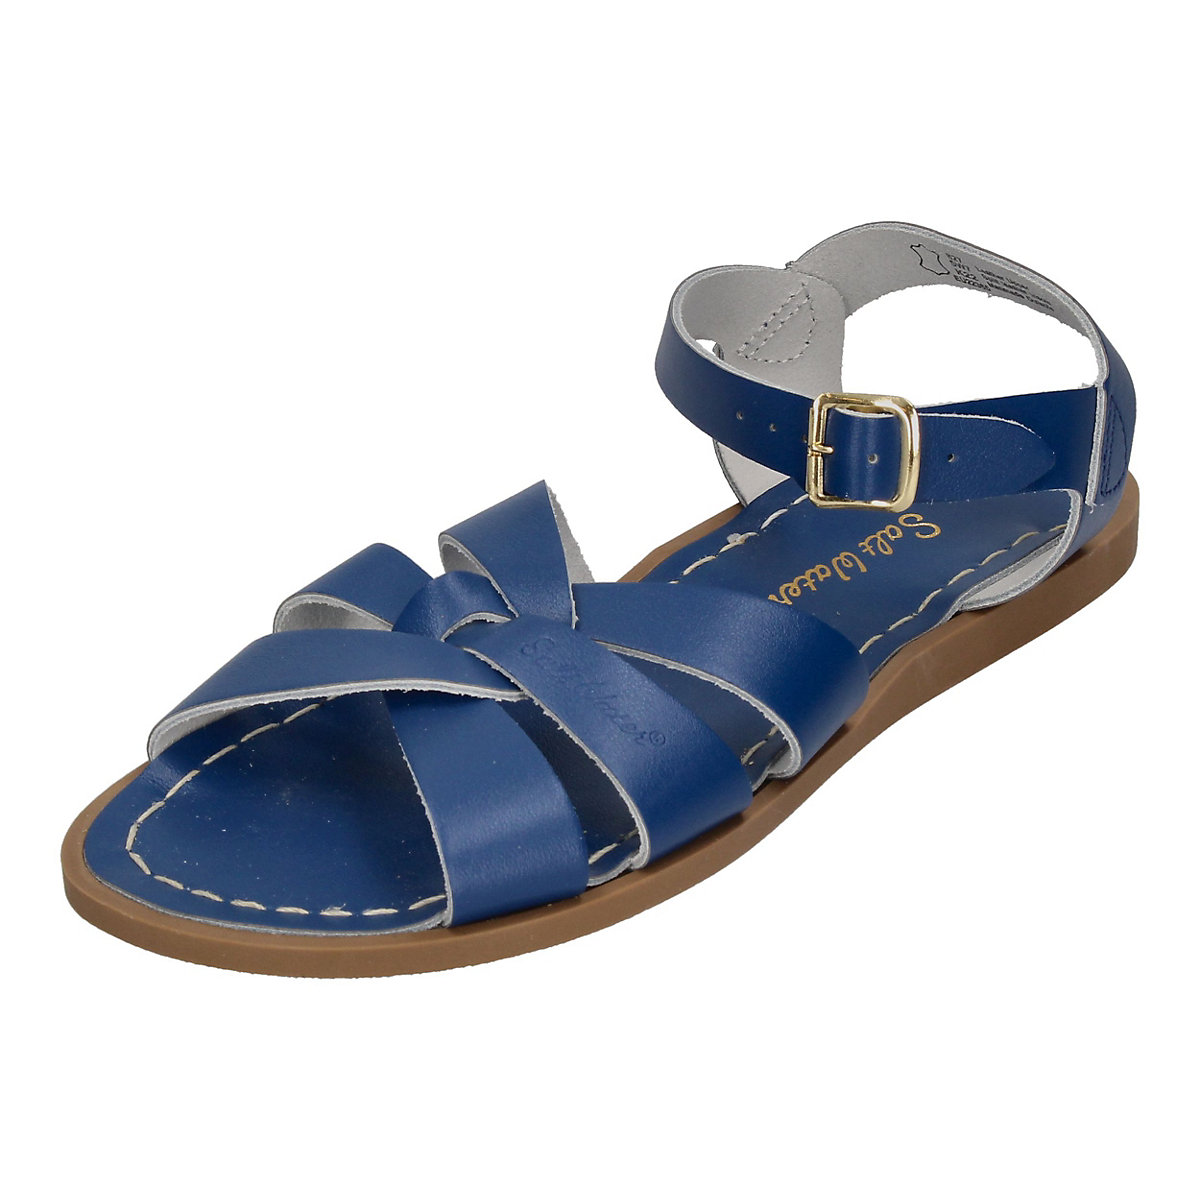 Salt-Water Sandals Original 827 Klassische Sandalen blau